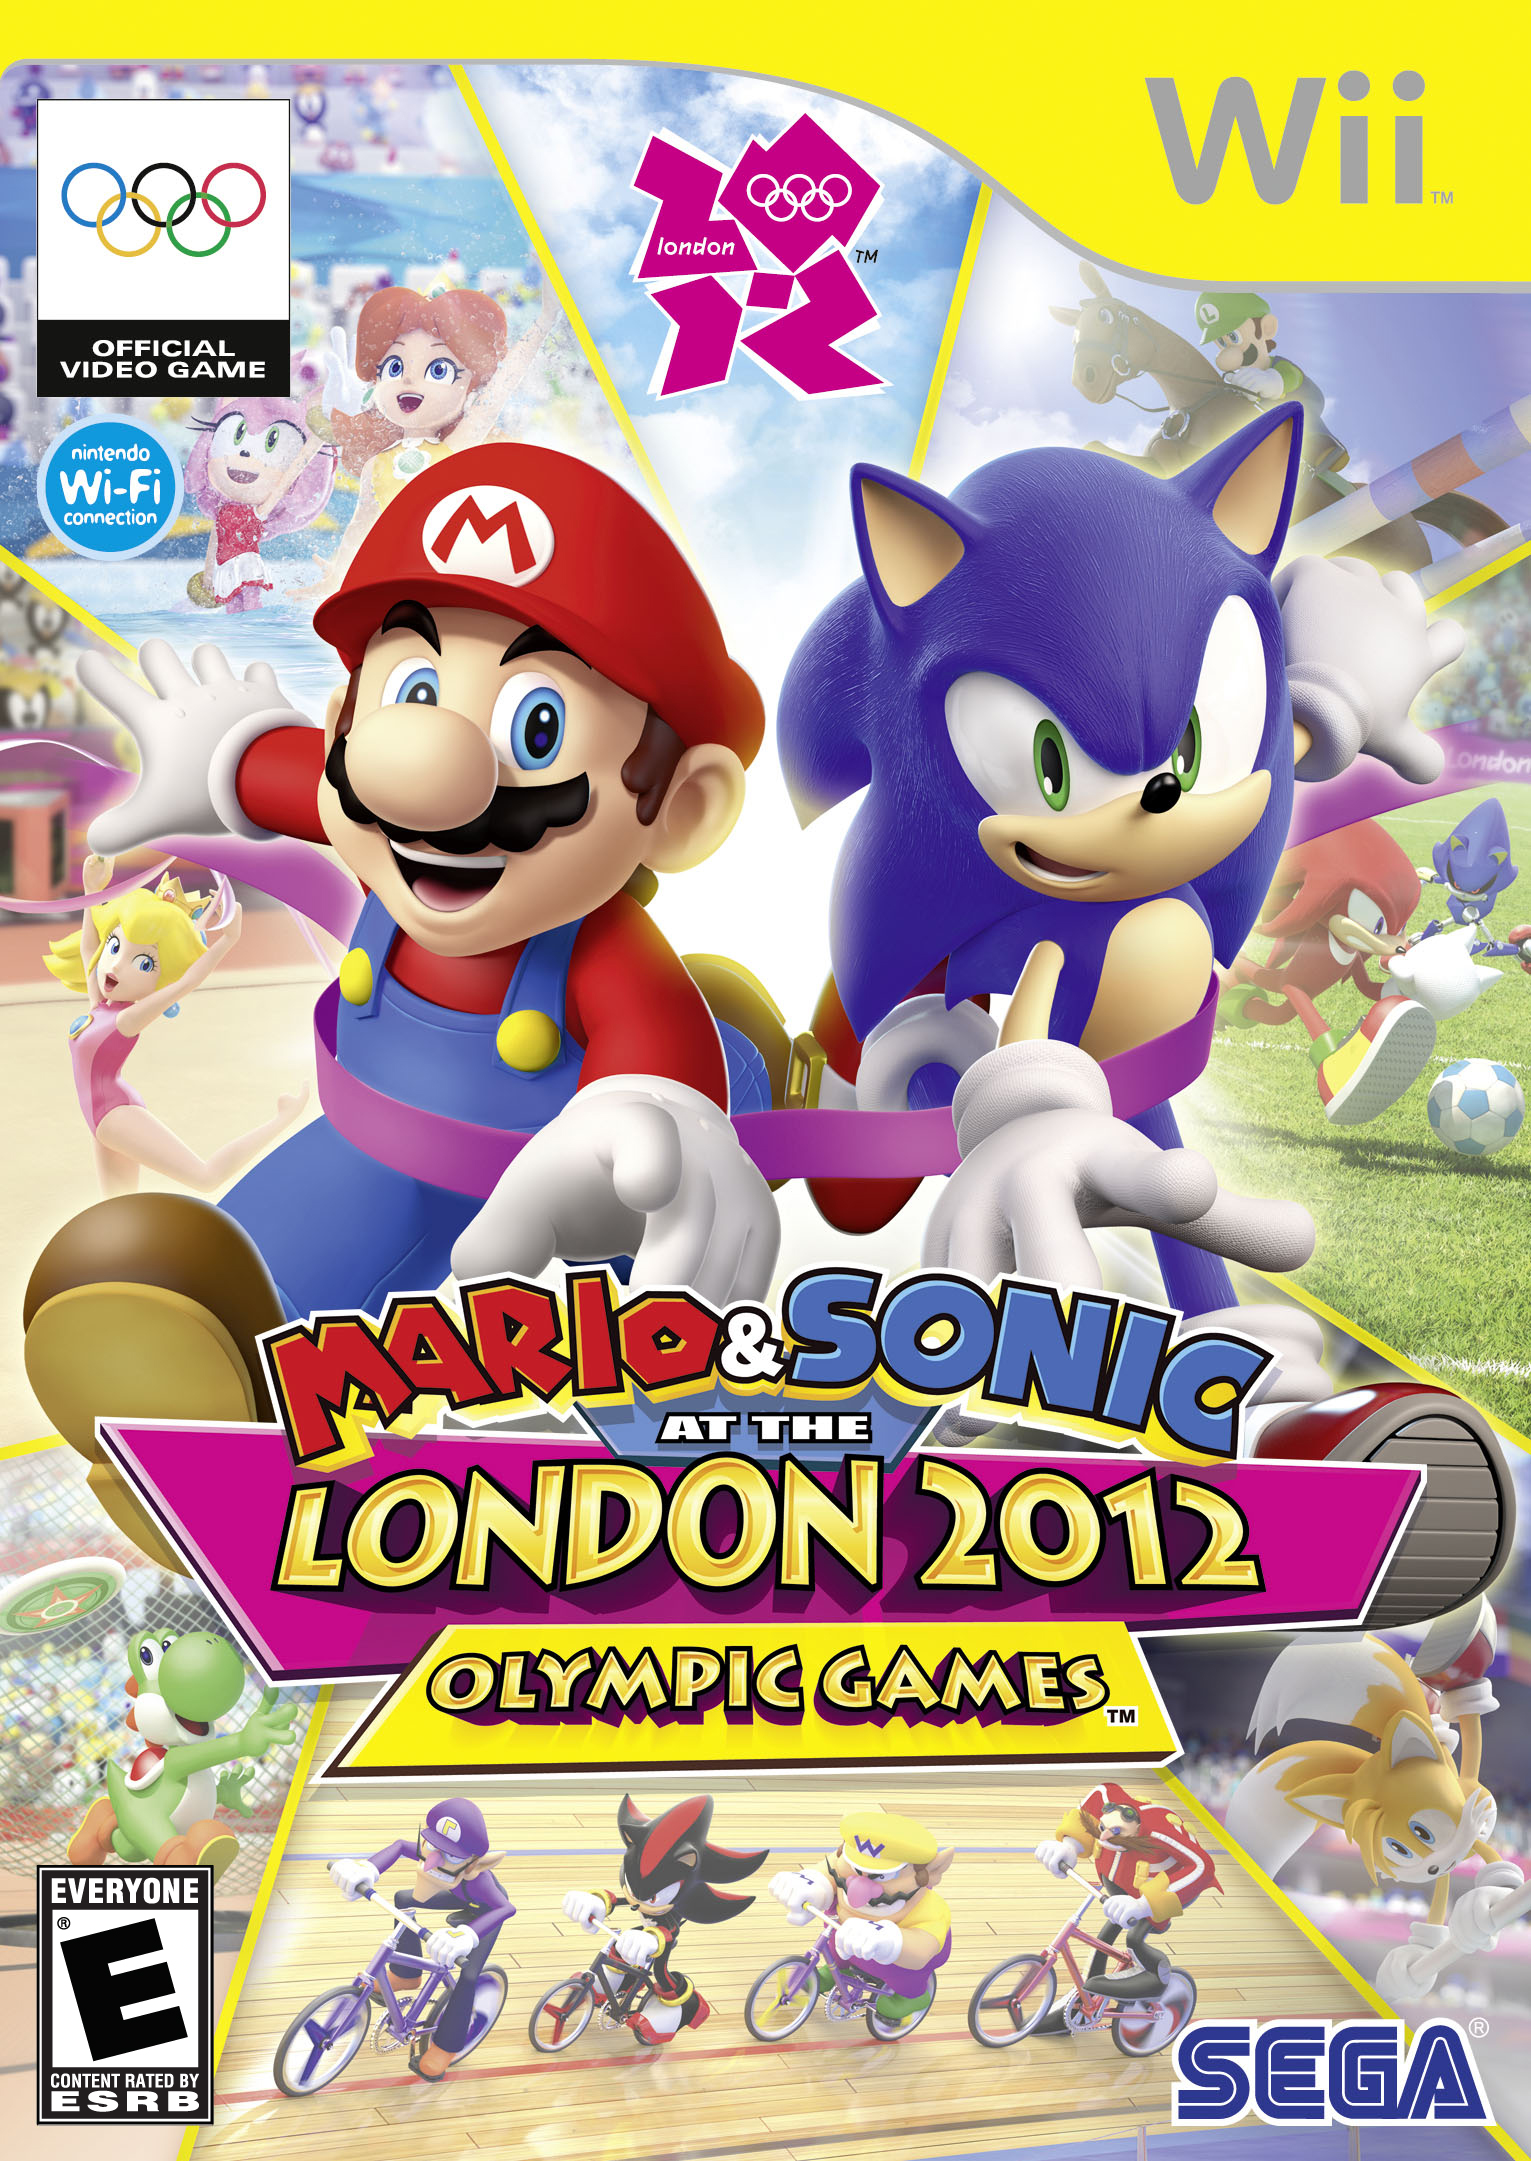 Jogue Mario 64 Sonic Edition Plus V2.2.2, um jogo de Sonic